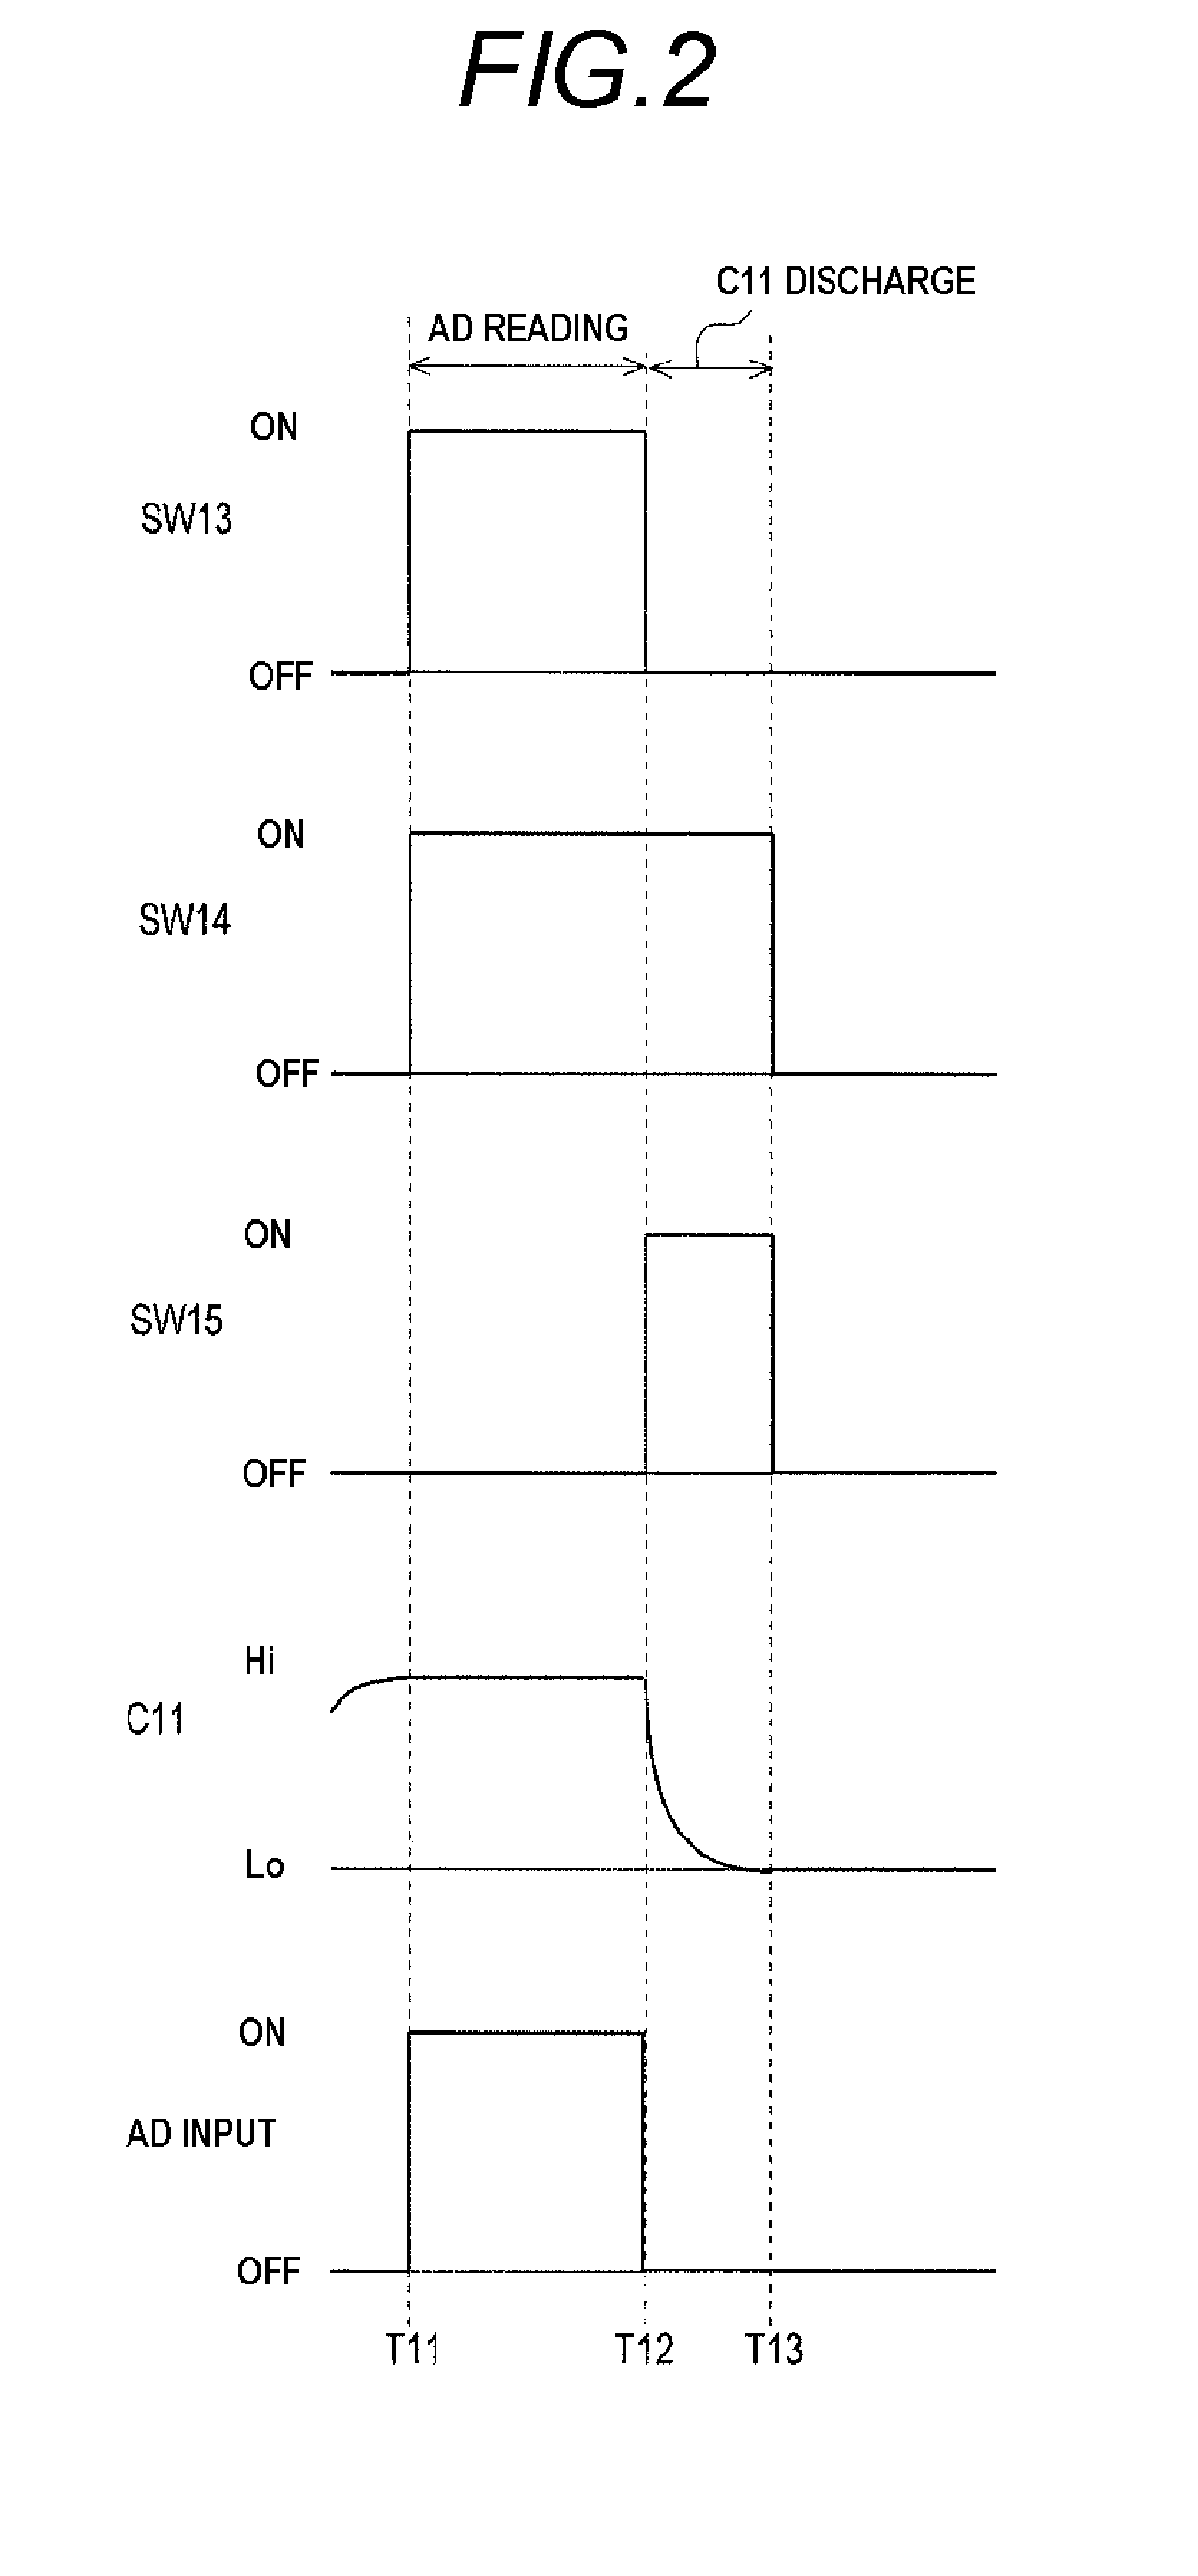 Insulation measuring apparatus